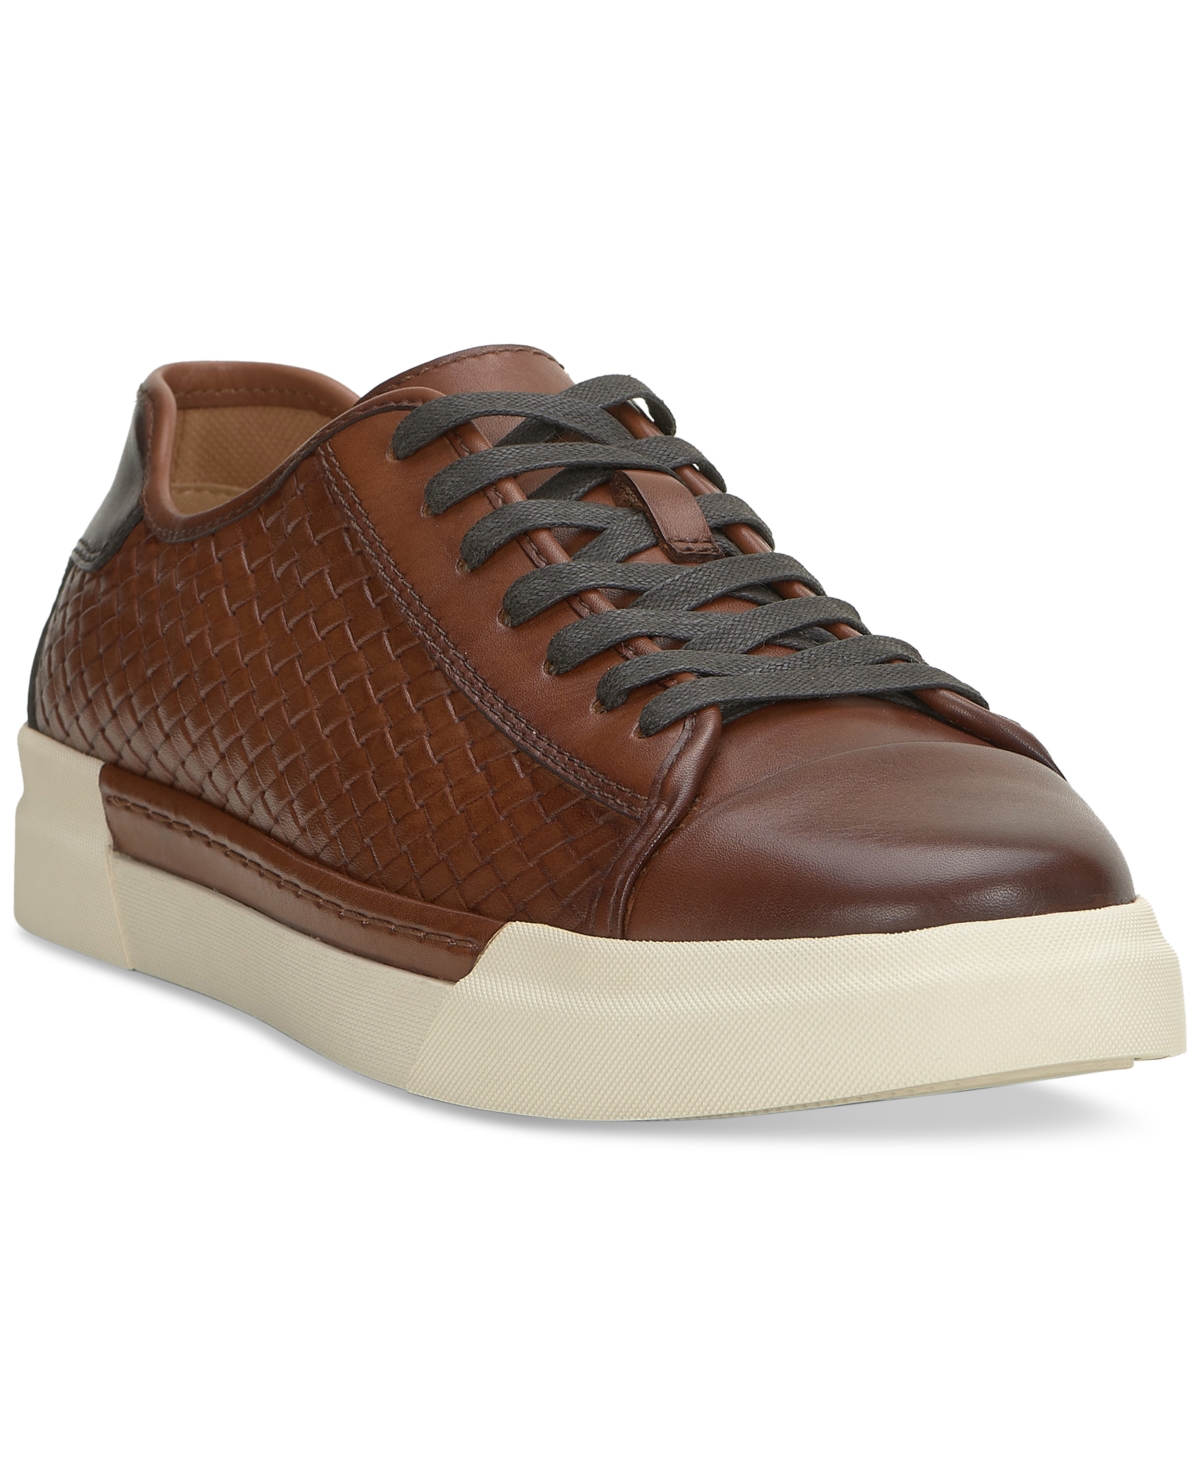 Men's Raigan Leather Low-Top Woven Sneaker - Cuero/Mocha